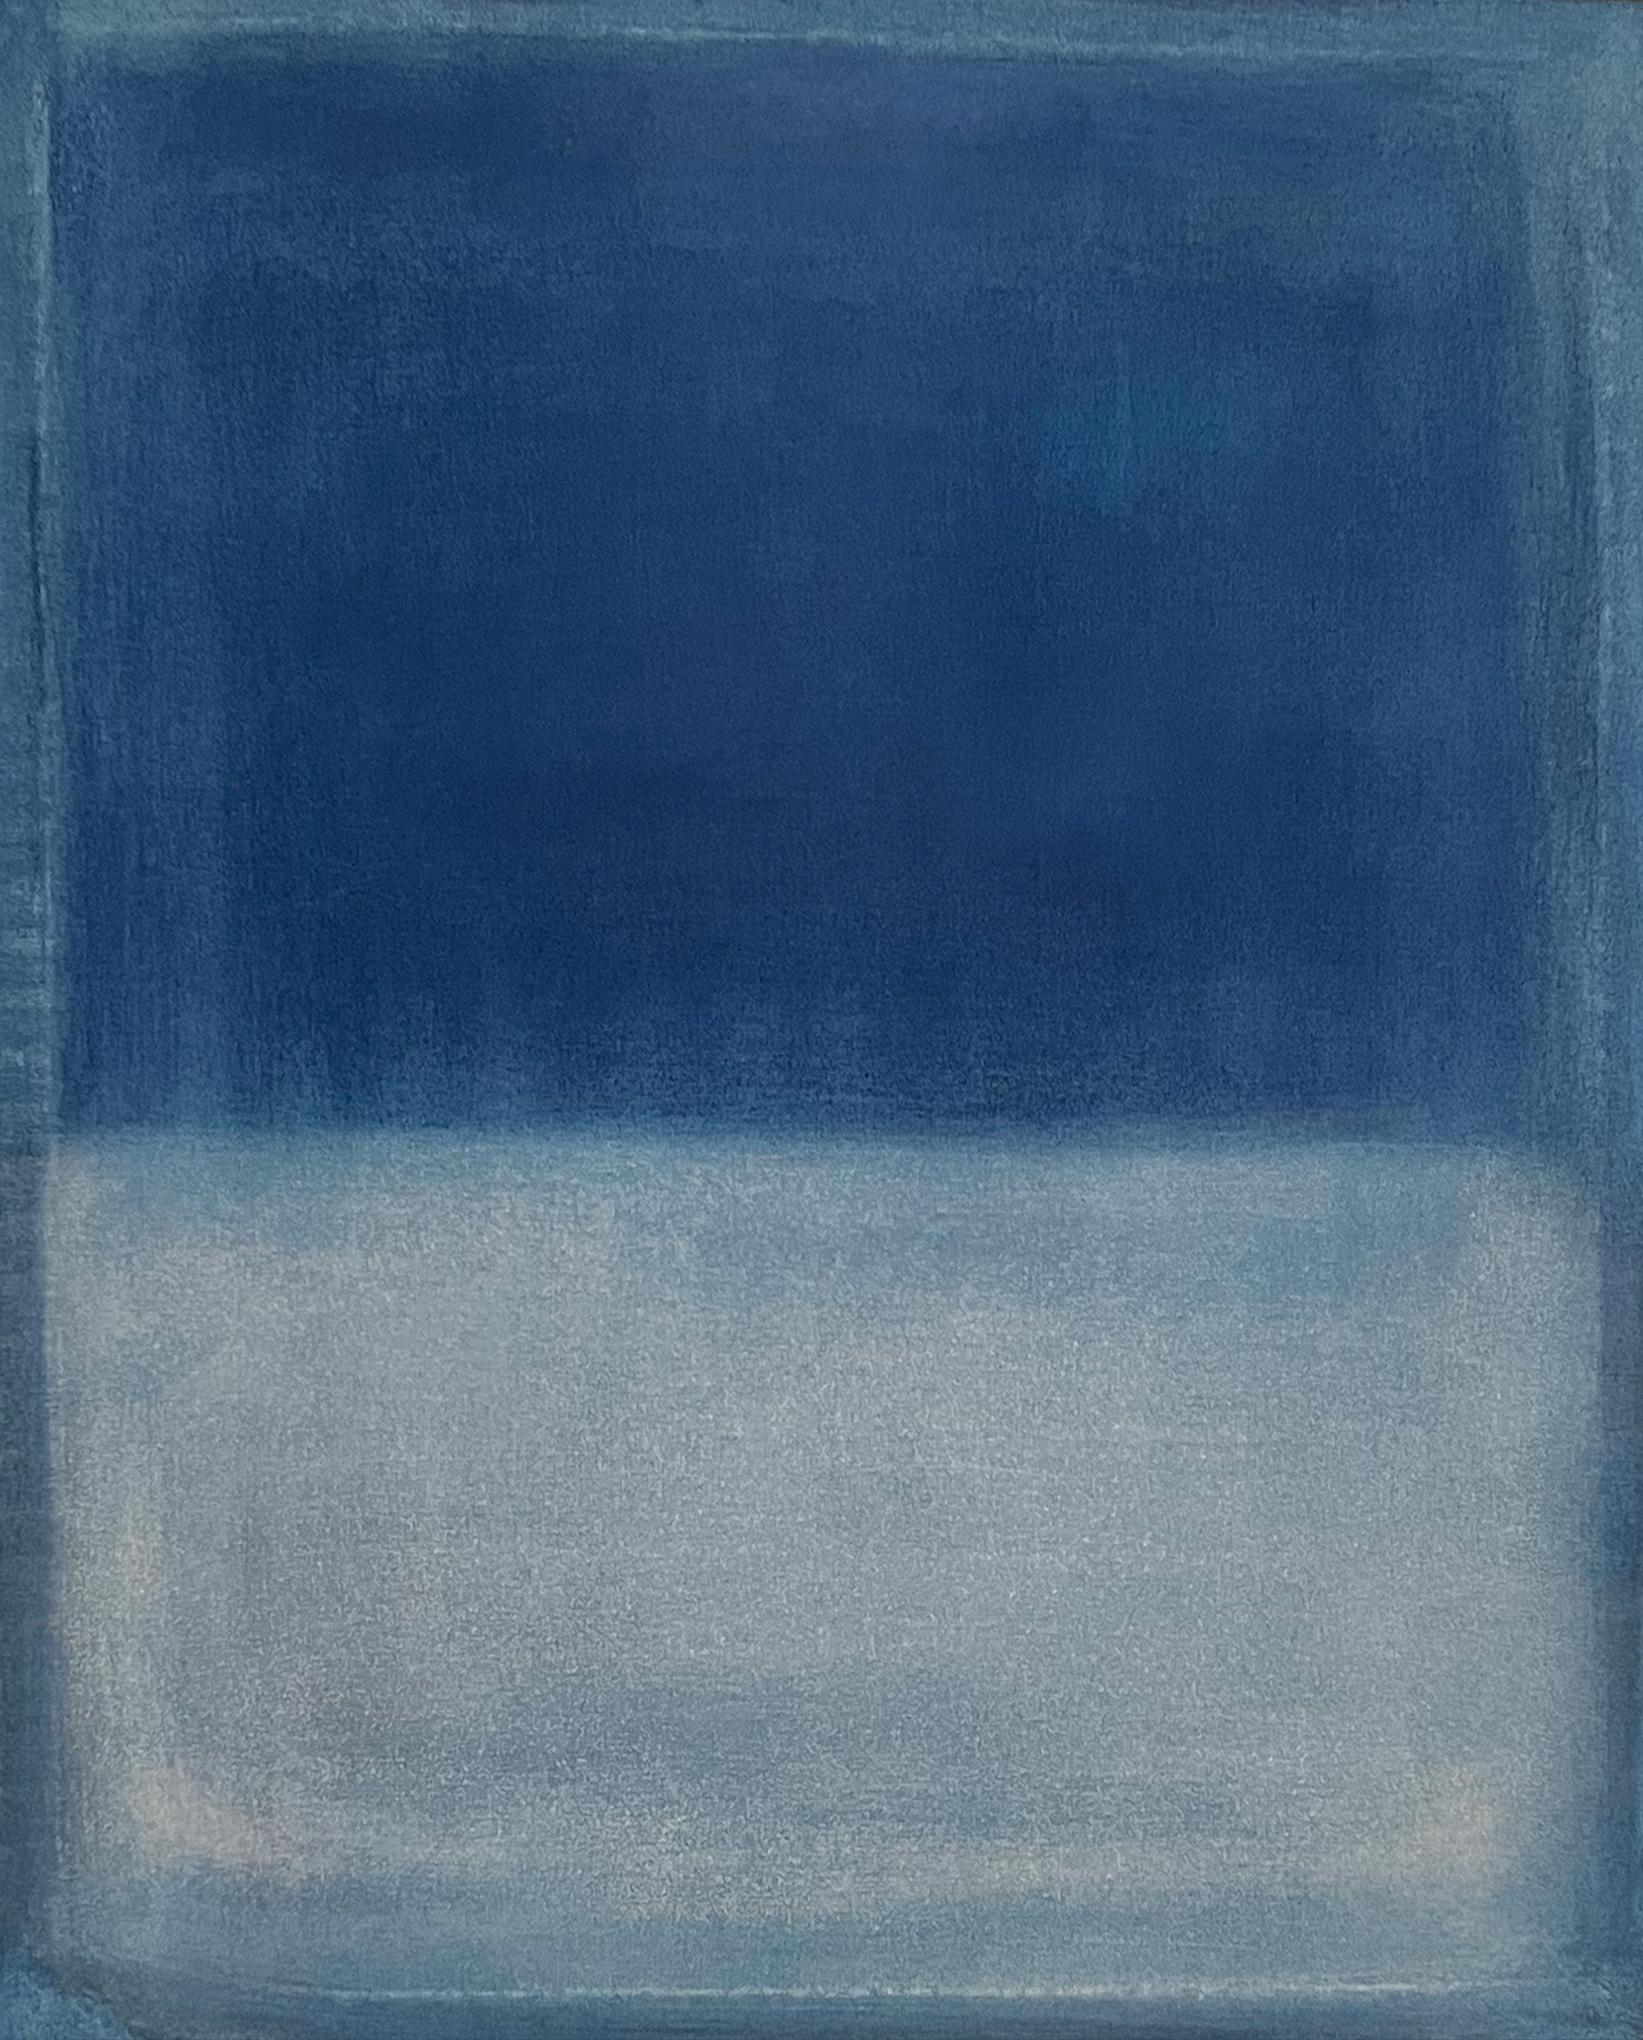 
Paysage bleu
art original
huile sur toile
50x40 cm
2023

Marilina Marchica, née en 1984, est née à Agrigente, où elle vit et travaille. Elle est diplômée en peinture à l'Academy Fine Paintings de Bologne et à l'université polytechnique de Valence